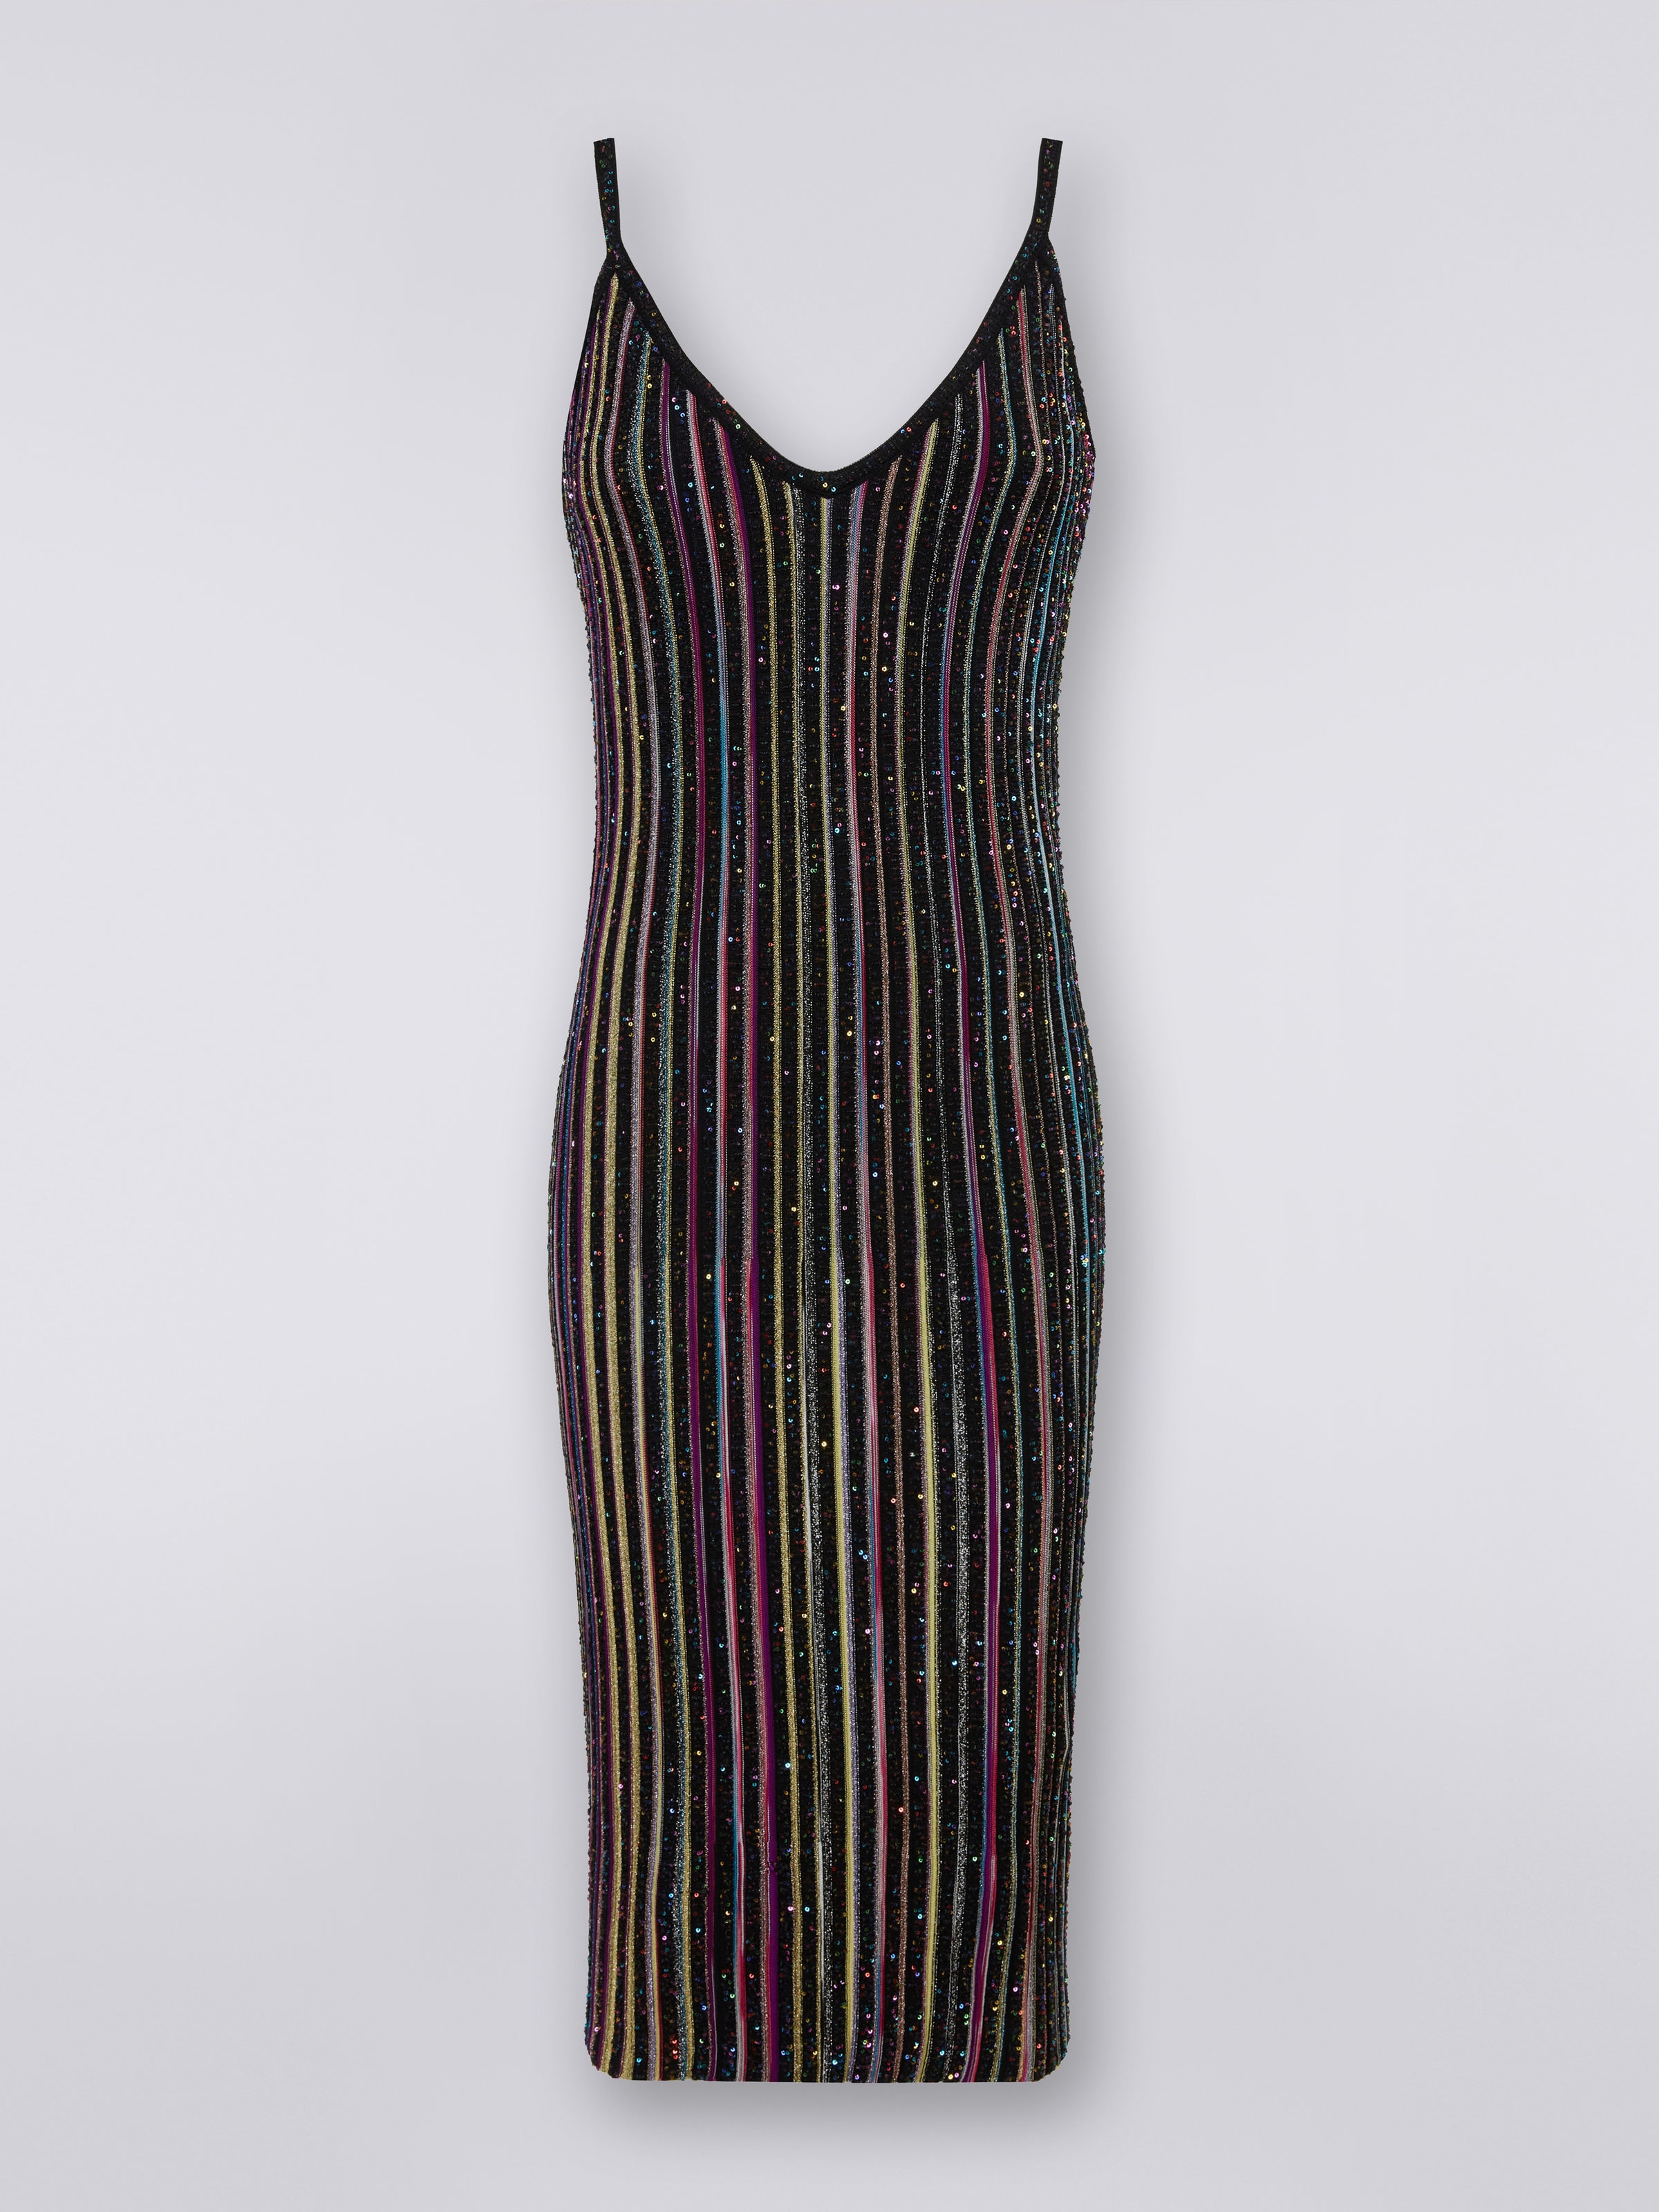 Eng anliegendes gestreiftes Kleid mit Pailletten, Schwarz & Mehrfarbig - 0